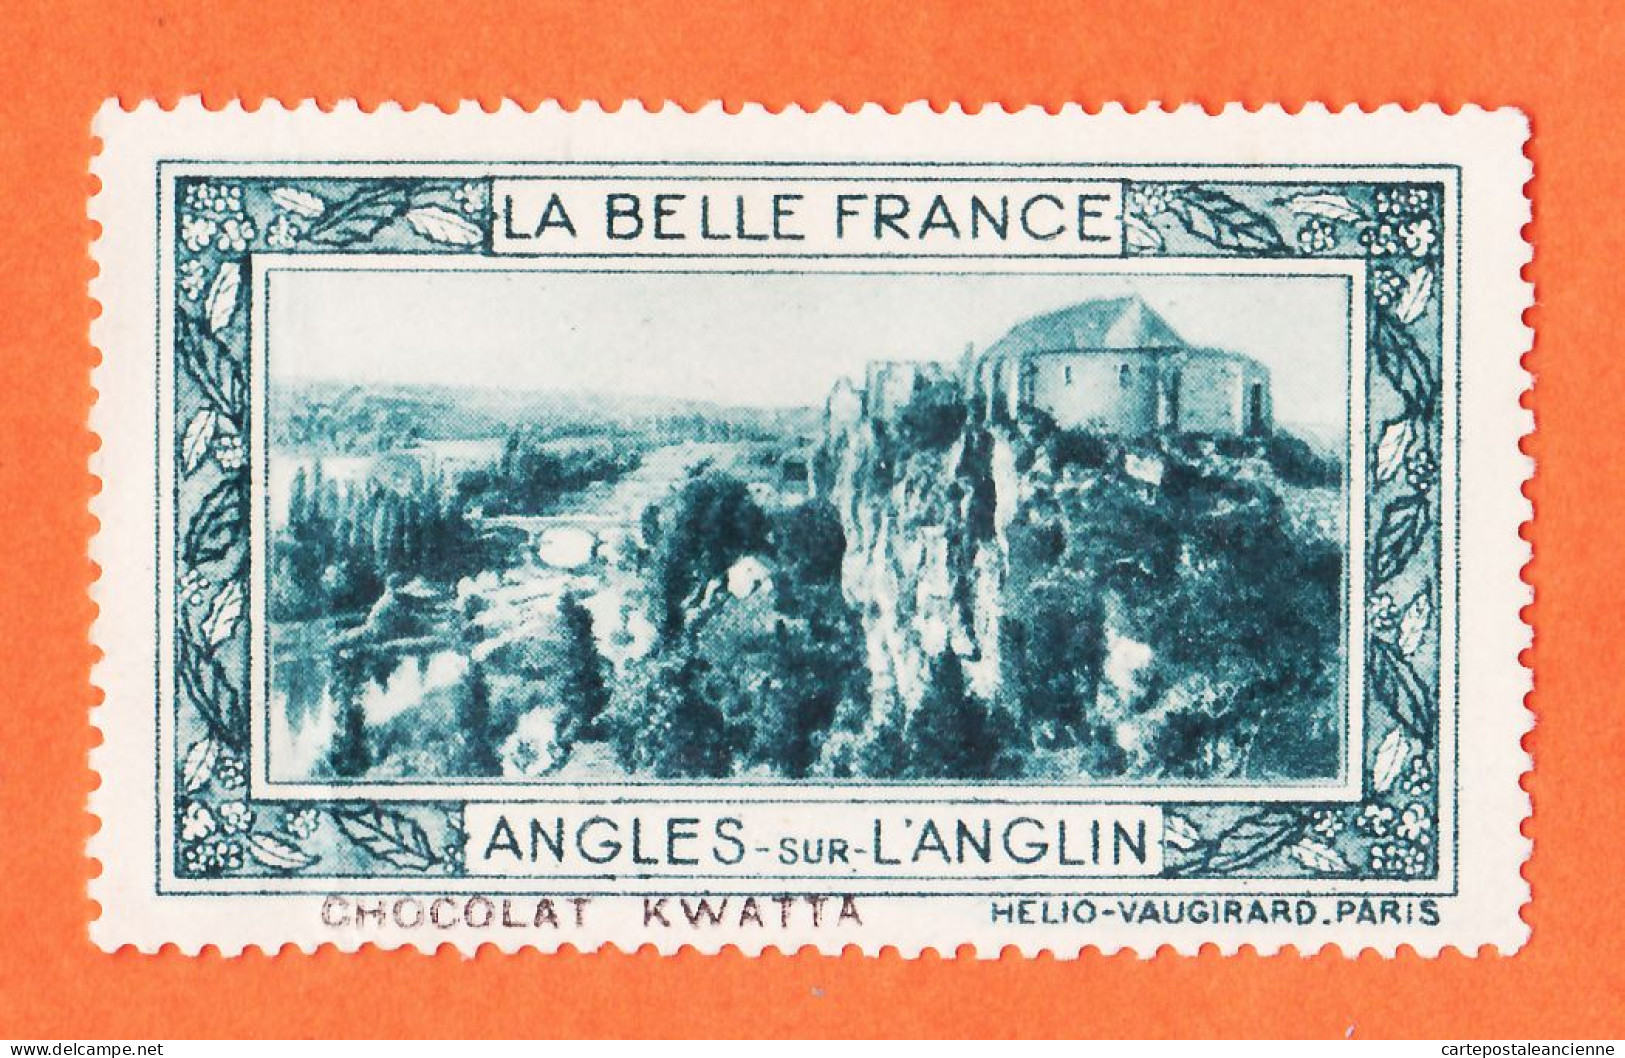 36976 / ⭐ ◉ LANGLES-sur-L'ANGLIN 86-Yonne Pub Chocolat KWATTA Vignette Collection BELLE FRANCE HELIO-VAUGIRARD - Tourism (Labels)